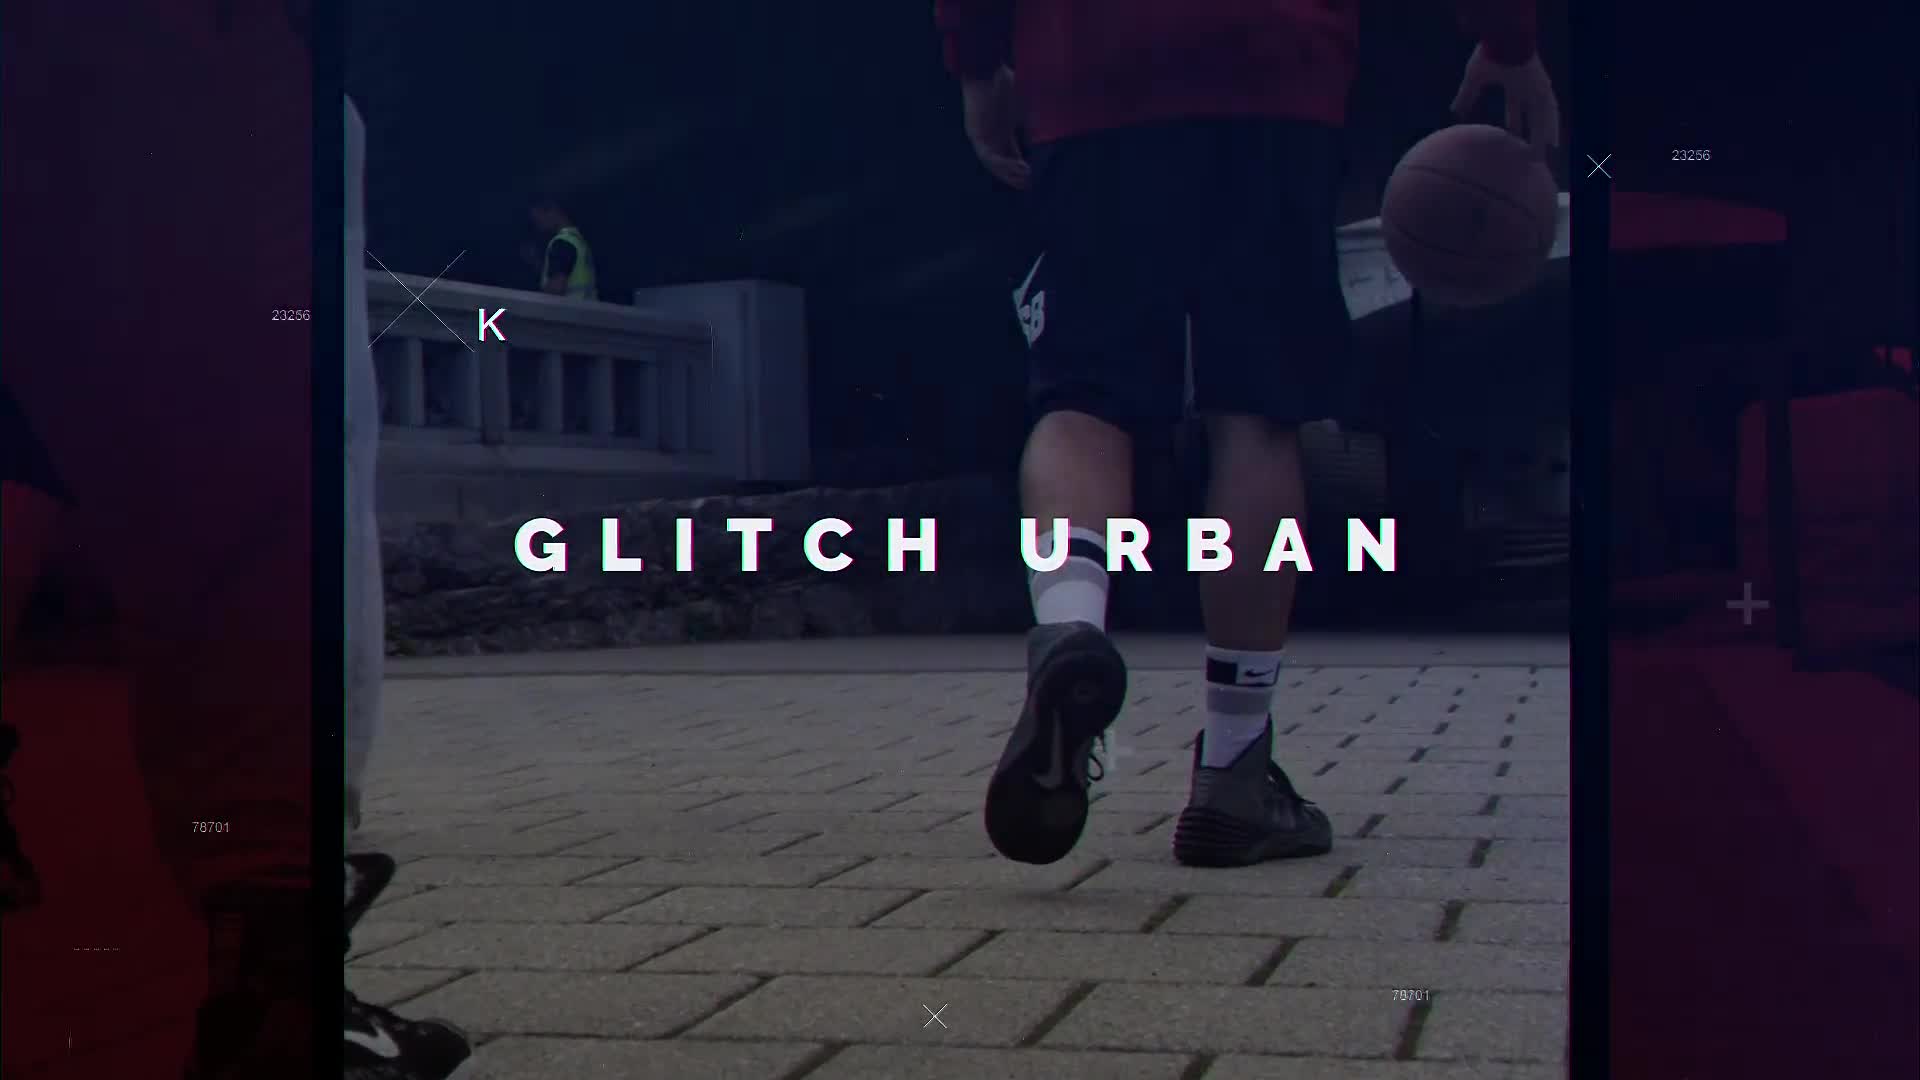 Urban Glitch - Download Videohive 23174474